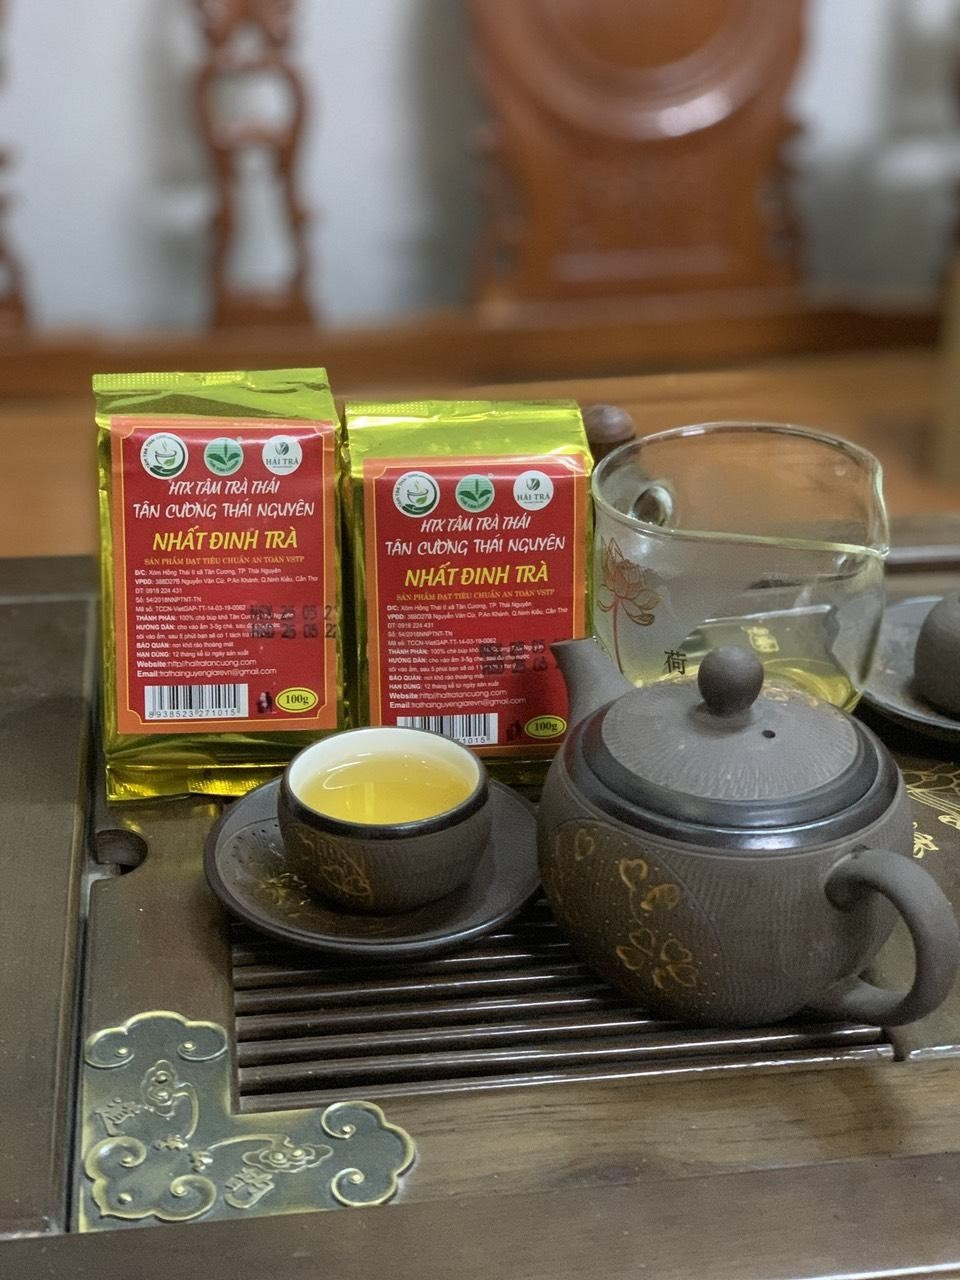 Hải Trà Tân Cương cung cấp trà Thái Nguyên ngon, sạch.